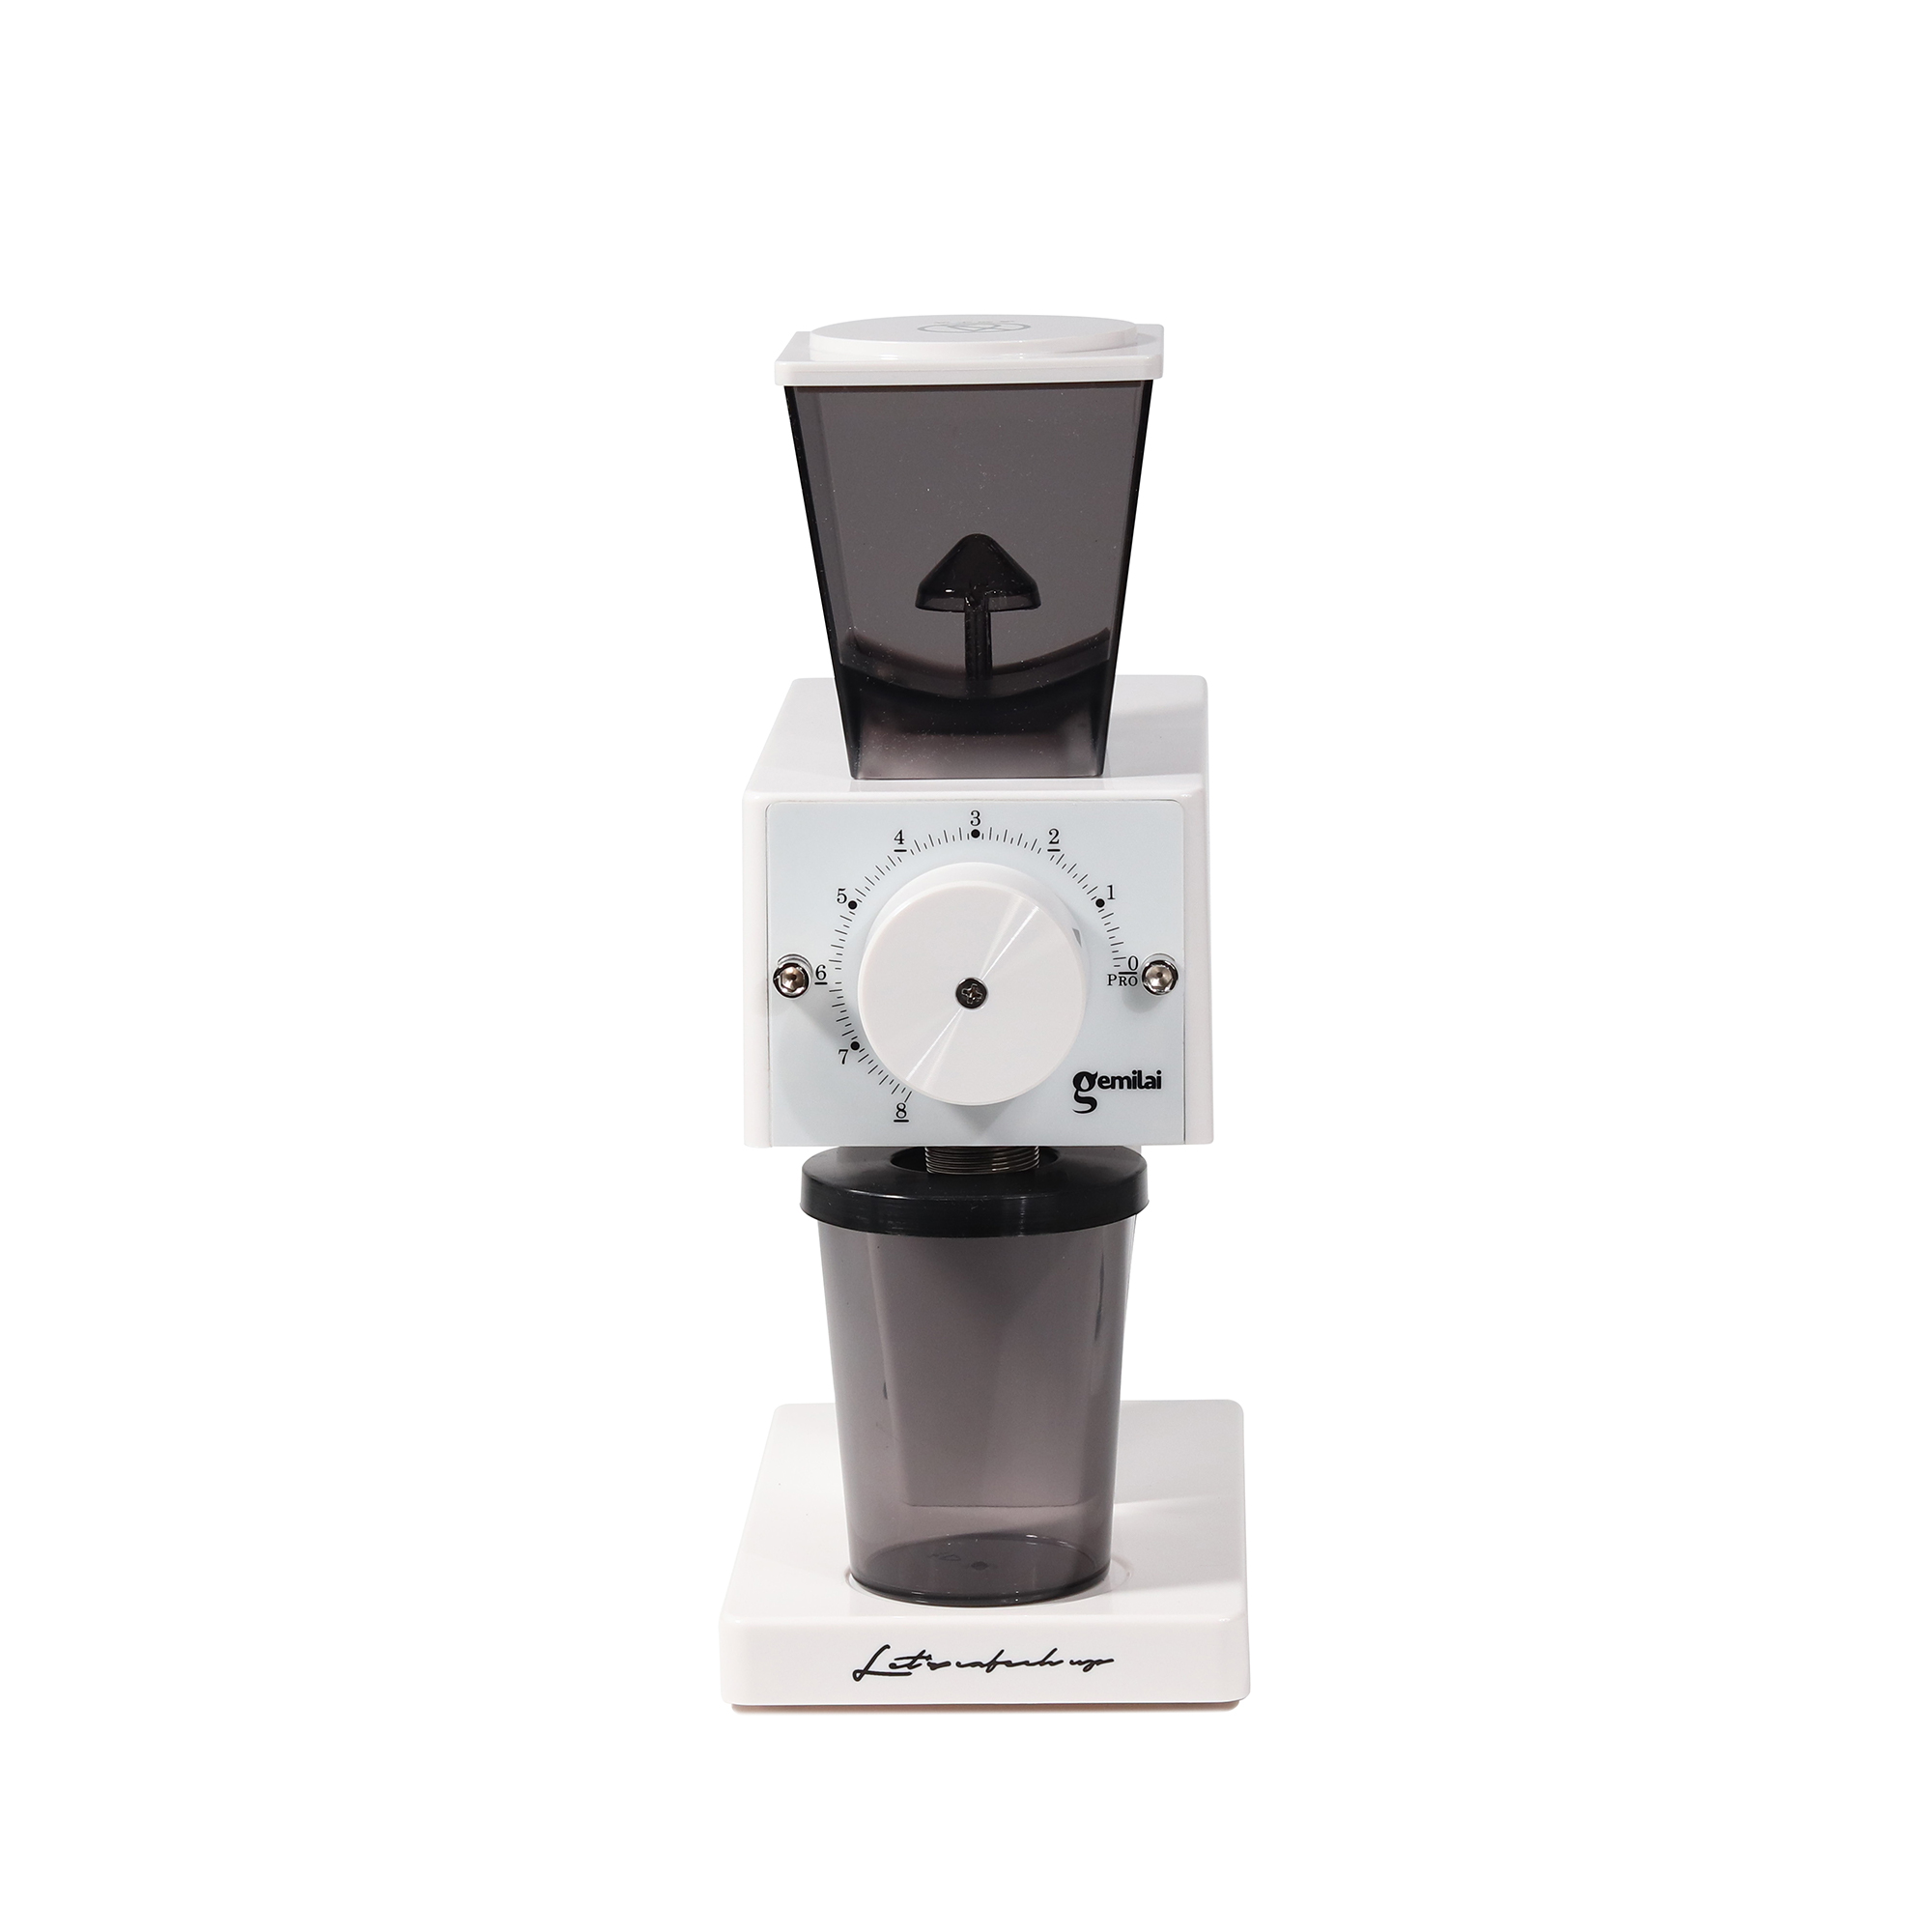 เครื่องบดกาแฟดริป Coffee Drip Grinder CRM9009 สีขาว